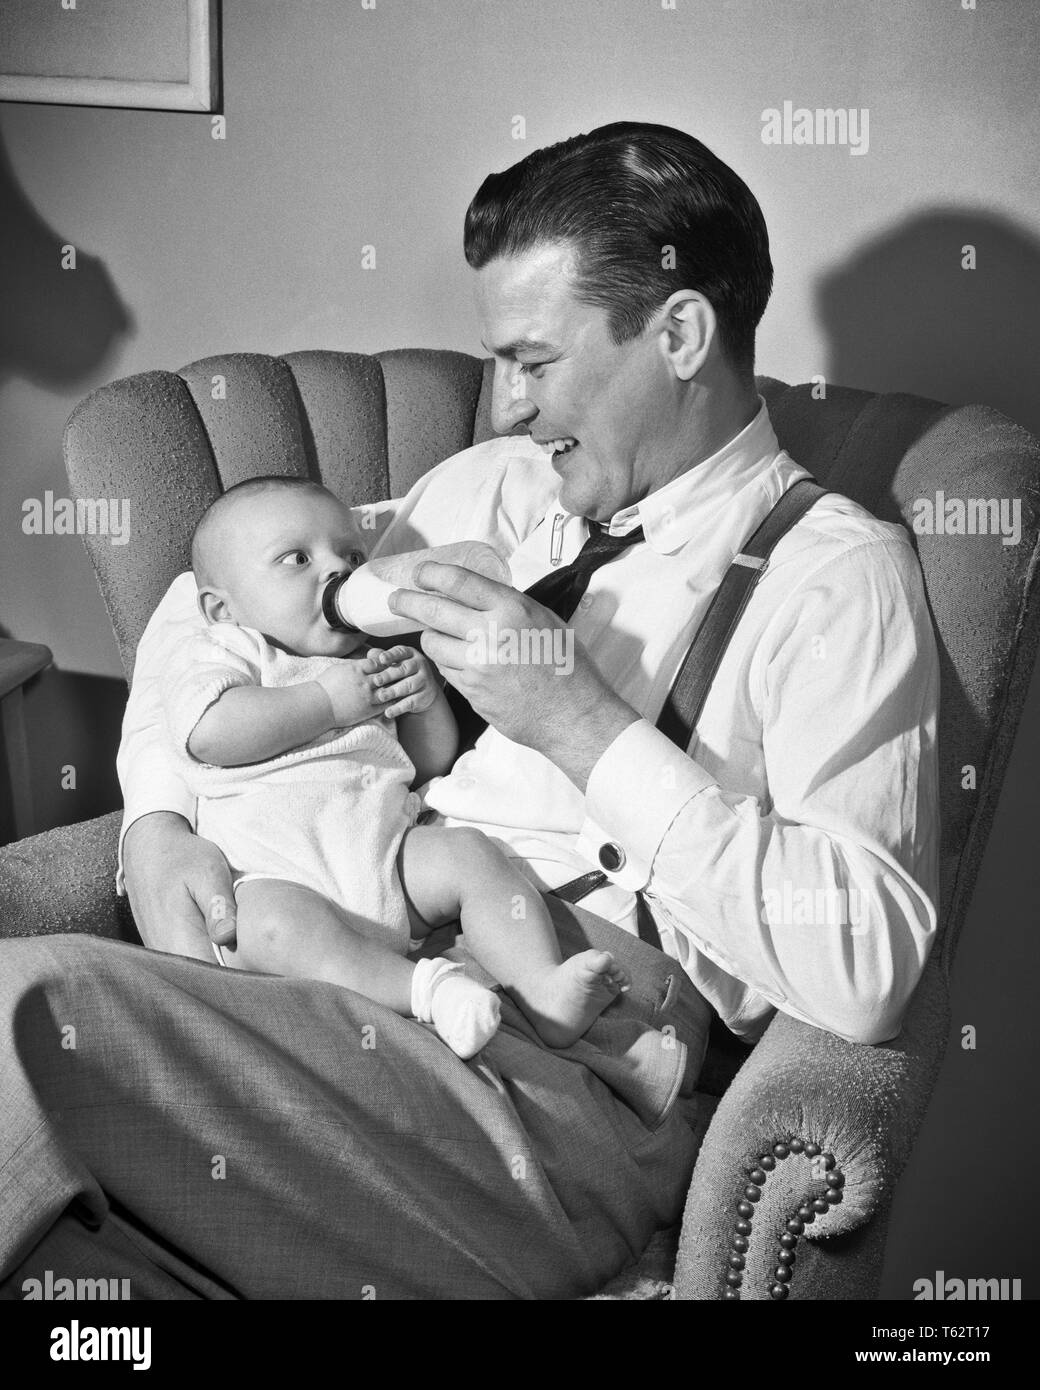 Années 1940 Années 1950 MAN SMILING PÈRE ASSIS DANS LE SALON PRÉSIDENT  HOLDING ET DE LAIT BIBERON BABY BOY FILS - b810 DEB001 HARS VIEUX TEMPS  NOSTALGIE HUGGING ANCIENNE MODE D'ALIMENTATION 1